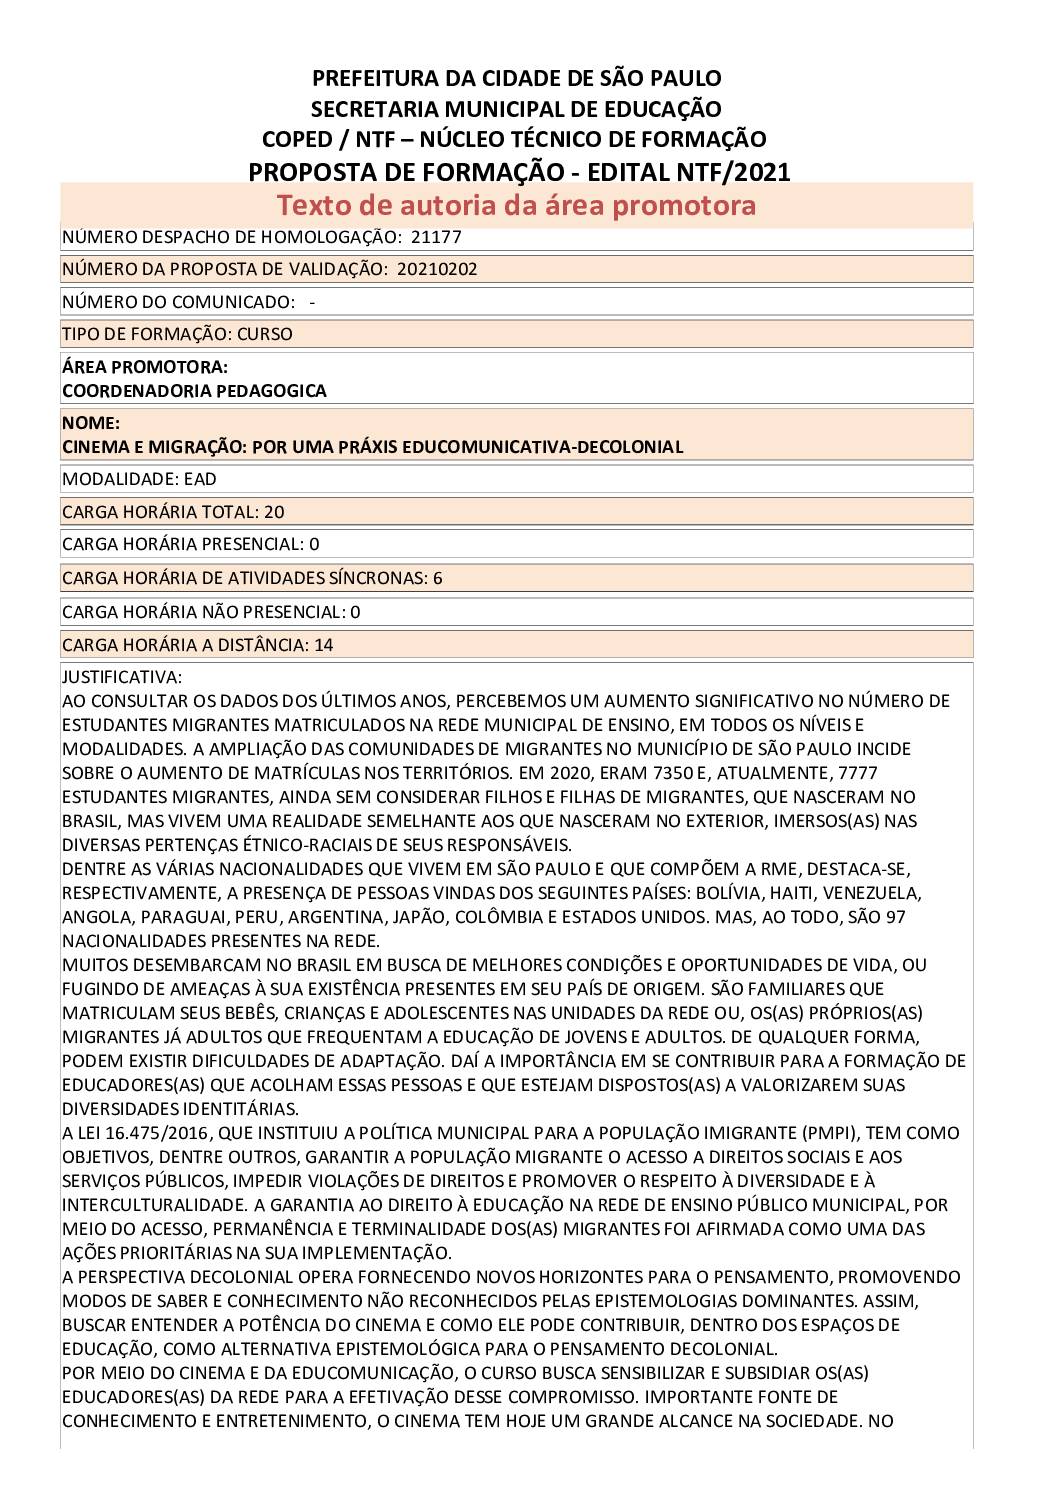 PDF com informações sobre o curso: CINEMA E MIGRAÇÃO: POR UMA PRÁXIS EDUCOMUNICATIVA-DECOLONIAL